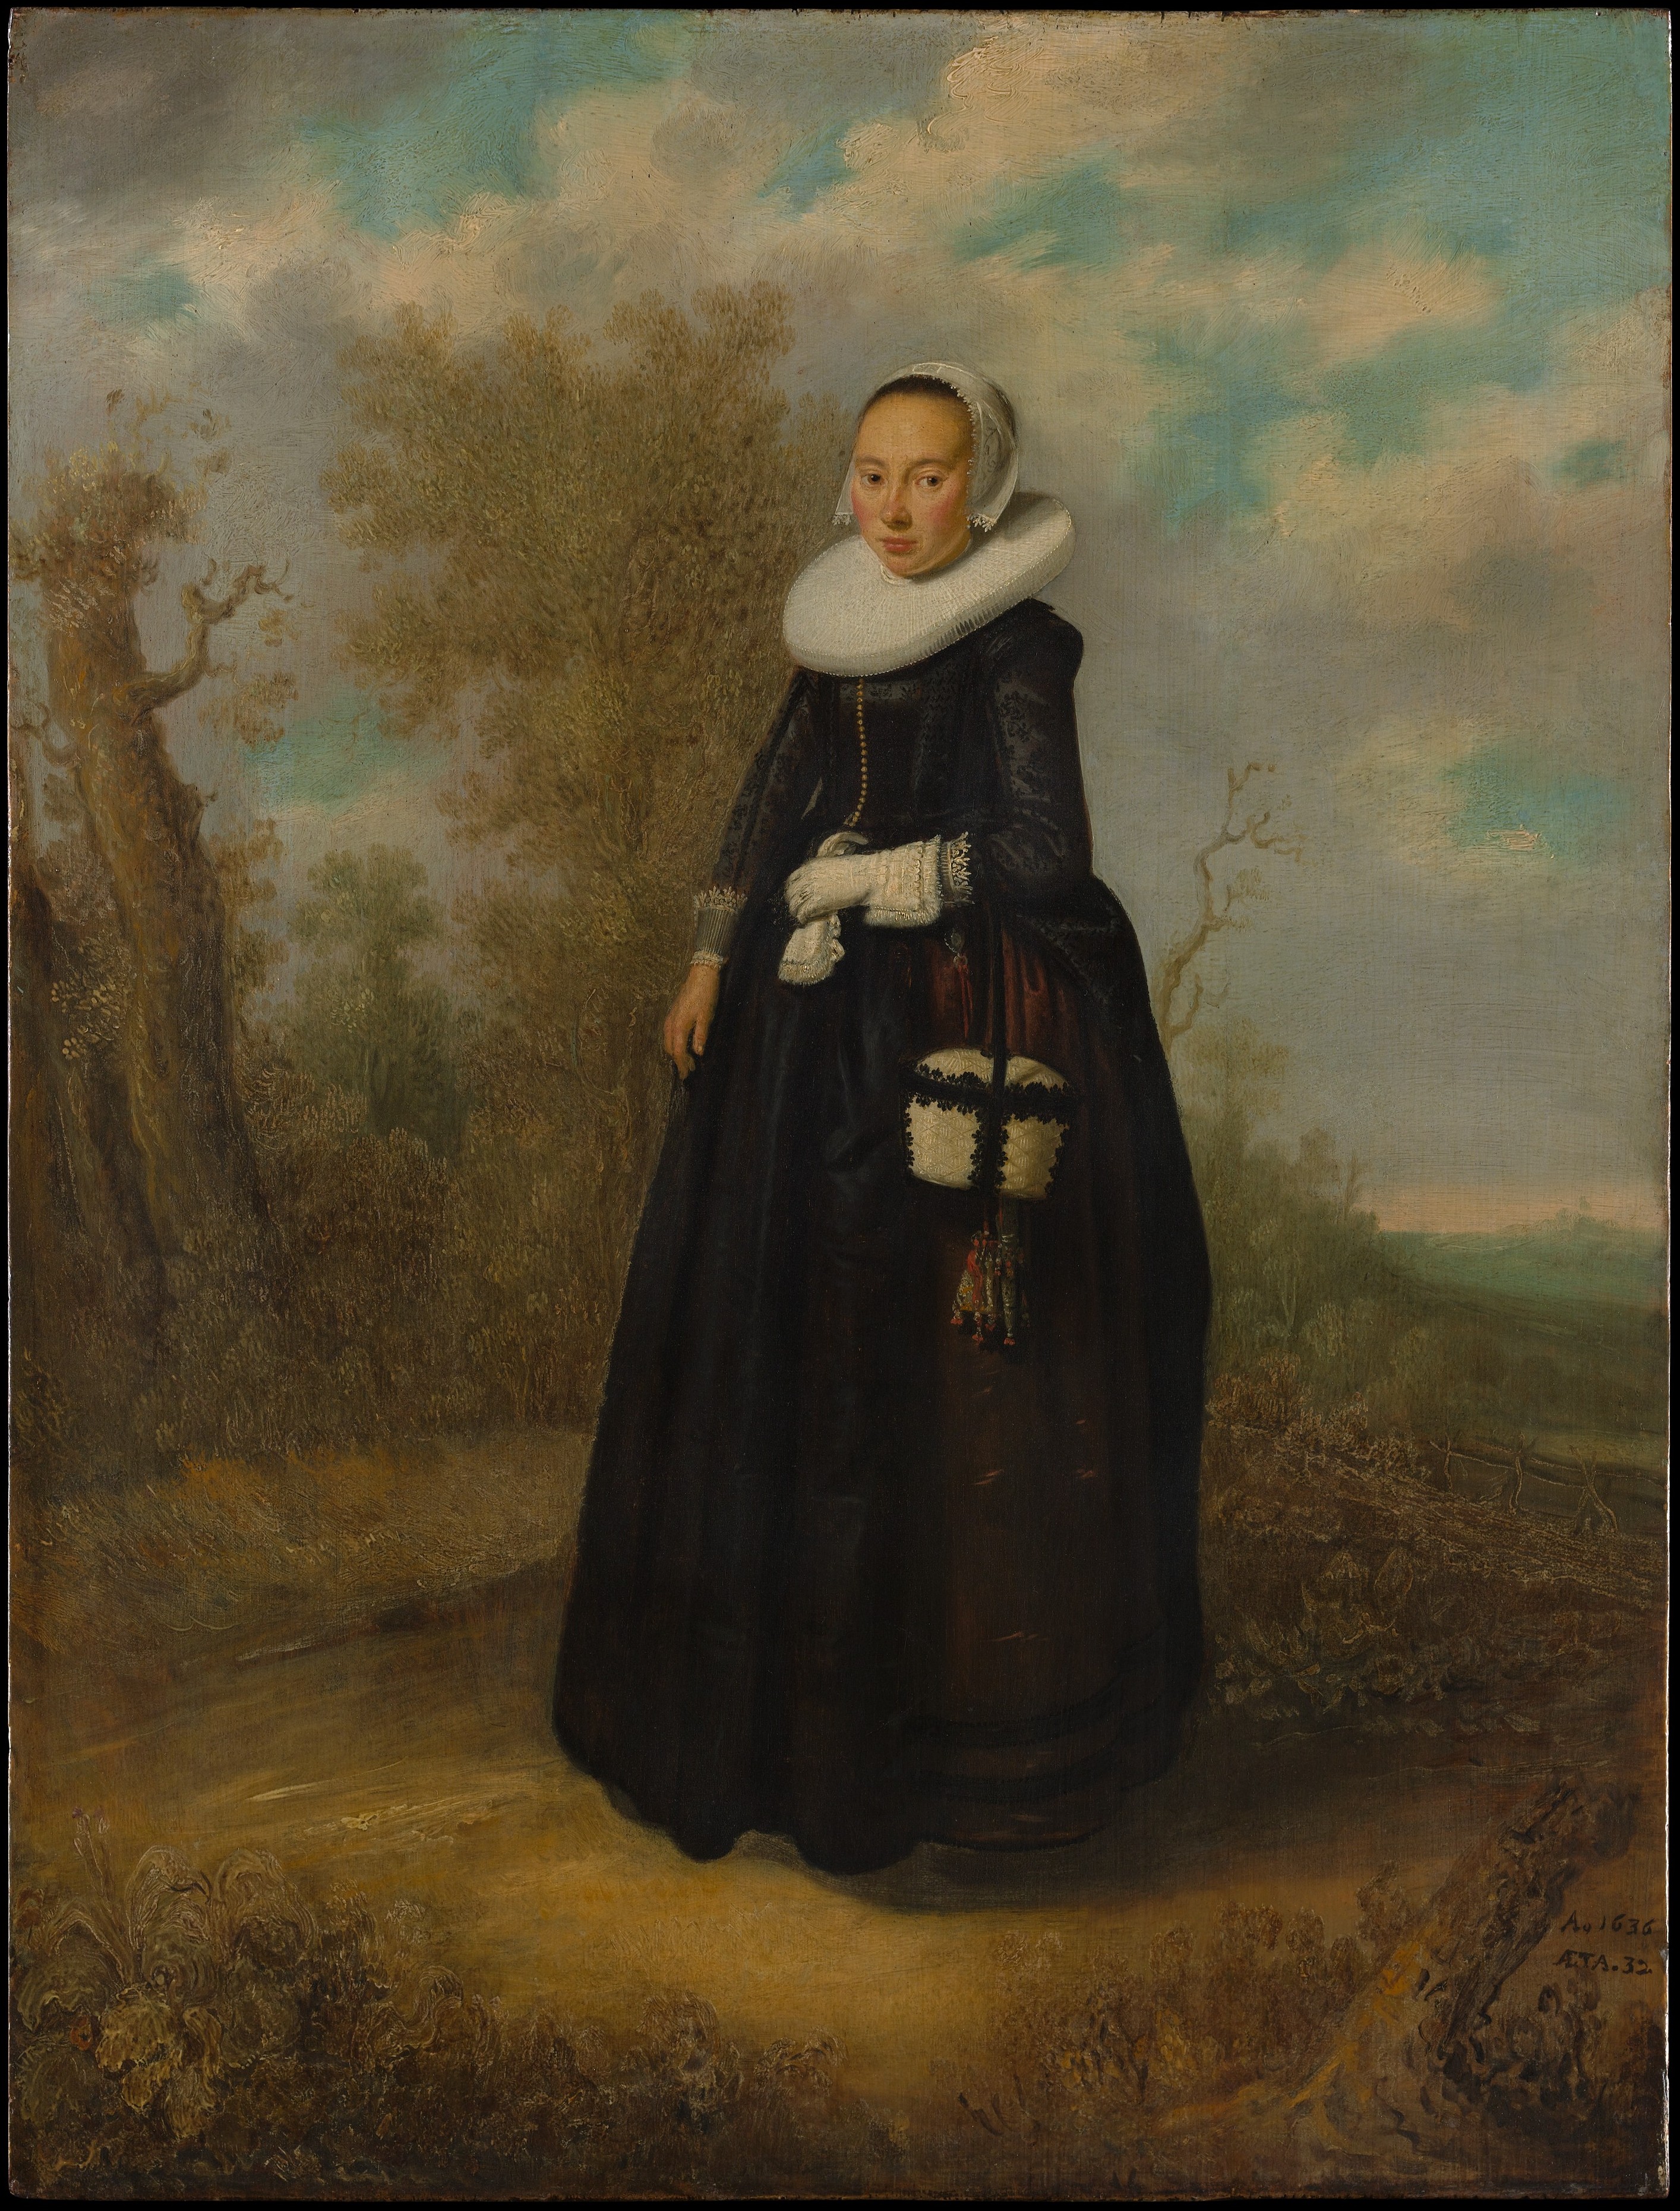 Une Femme Jeune Dans un Paysage by Artiste Inconnu - 1636 - 66 x 50.5 cm Metropolitan Museum of Art